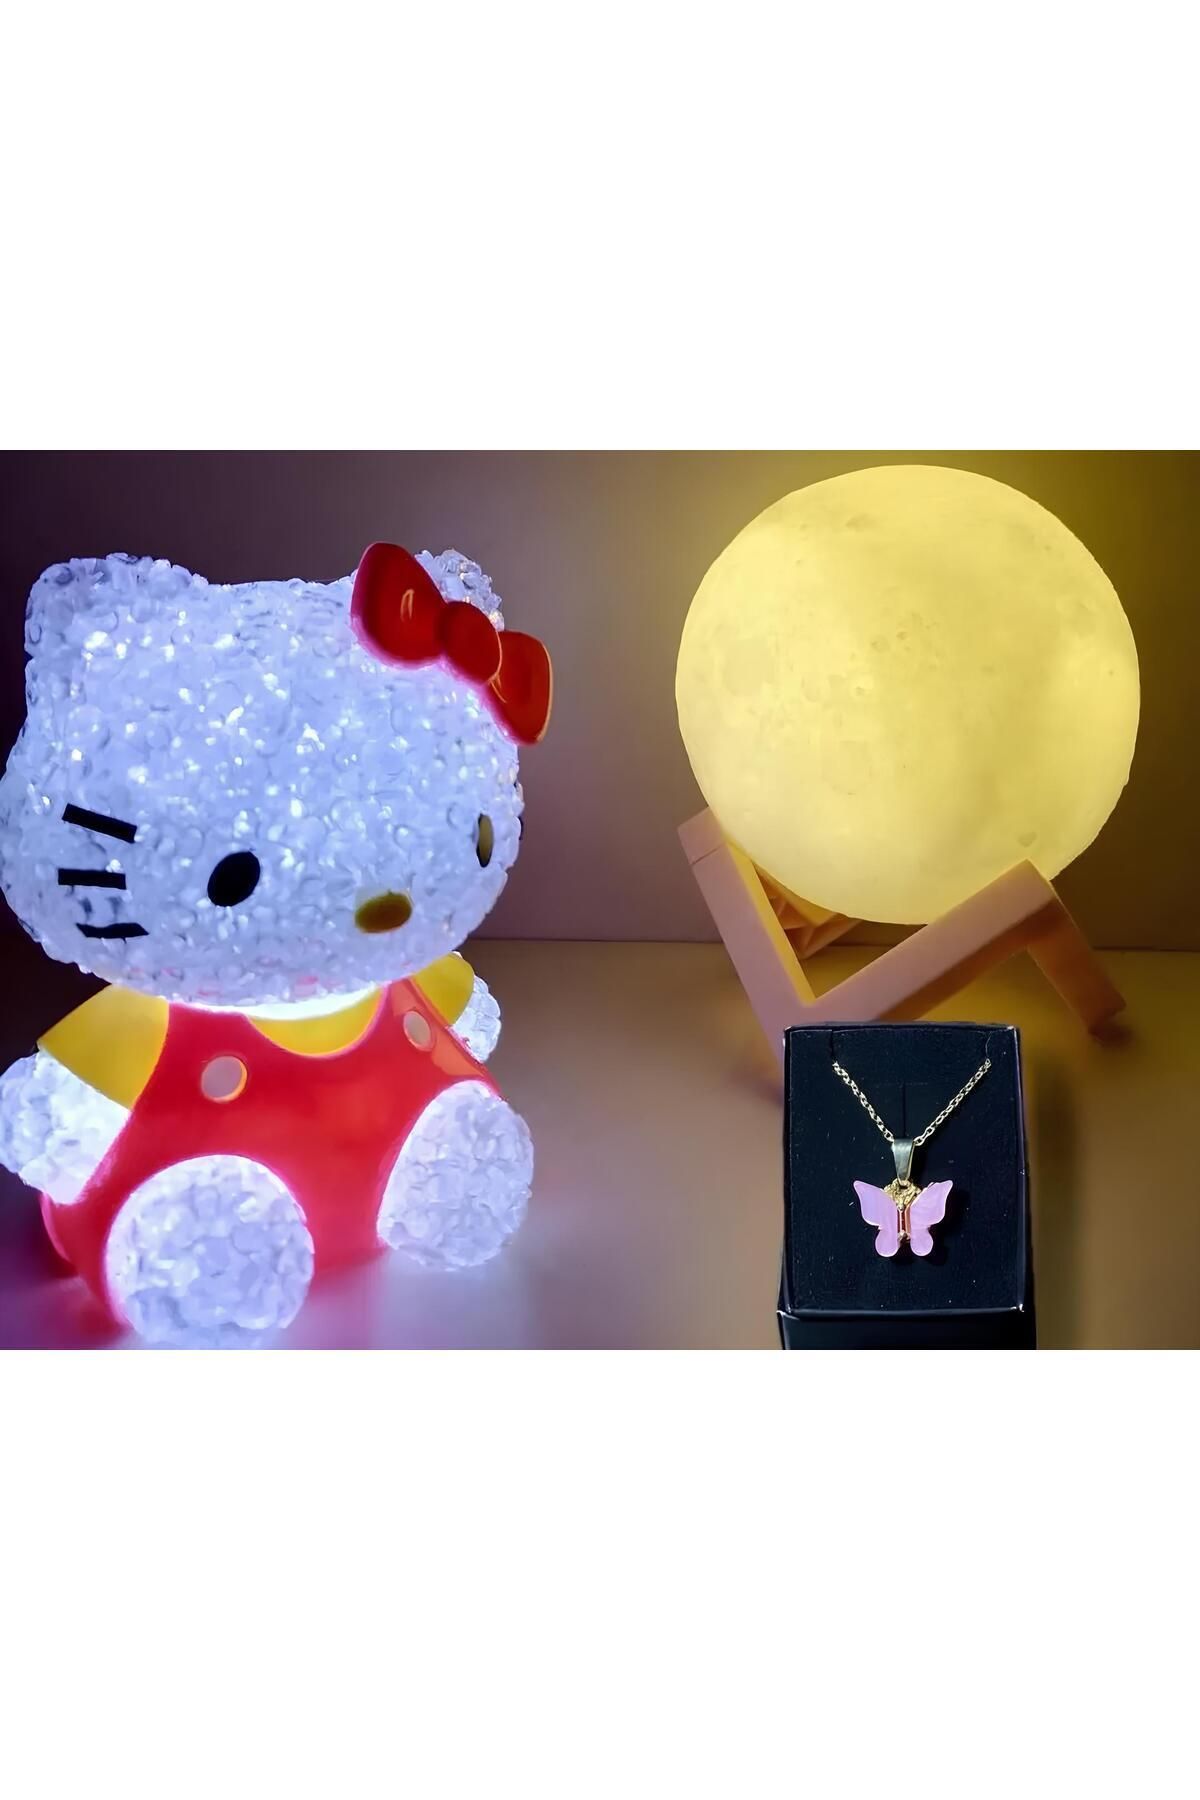 Işık kasabası 3'lü set- Kelebek kolye - hello kitty - 3D LED küre gece lambası bujiteri hediye sepeti